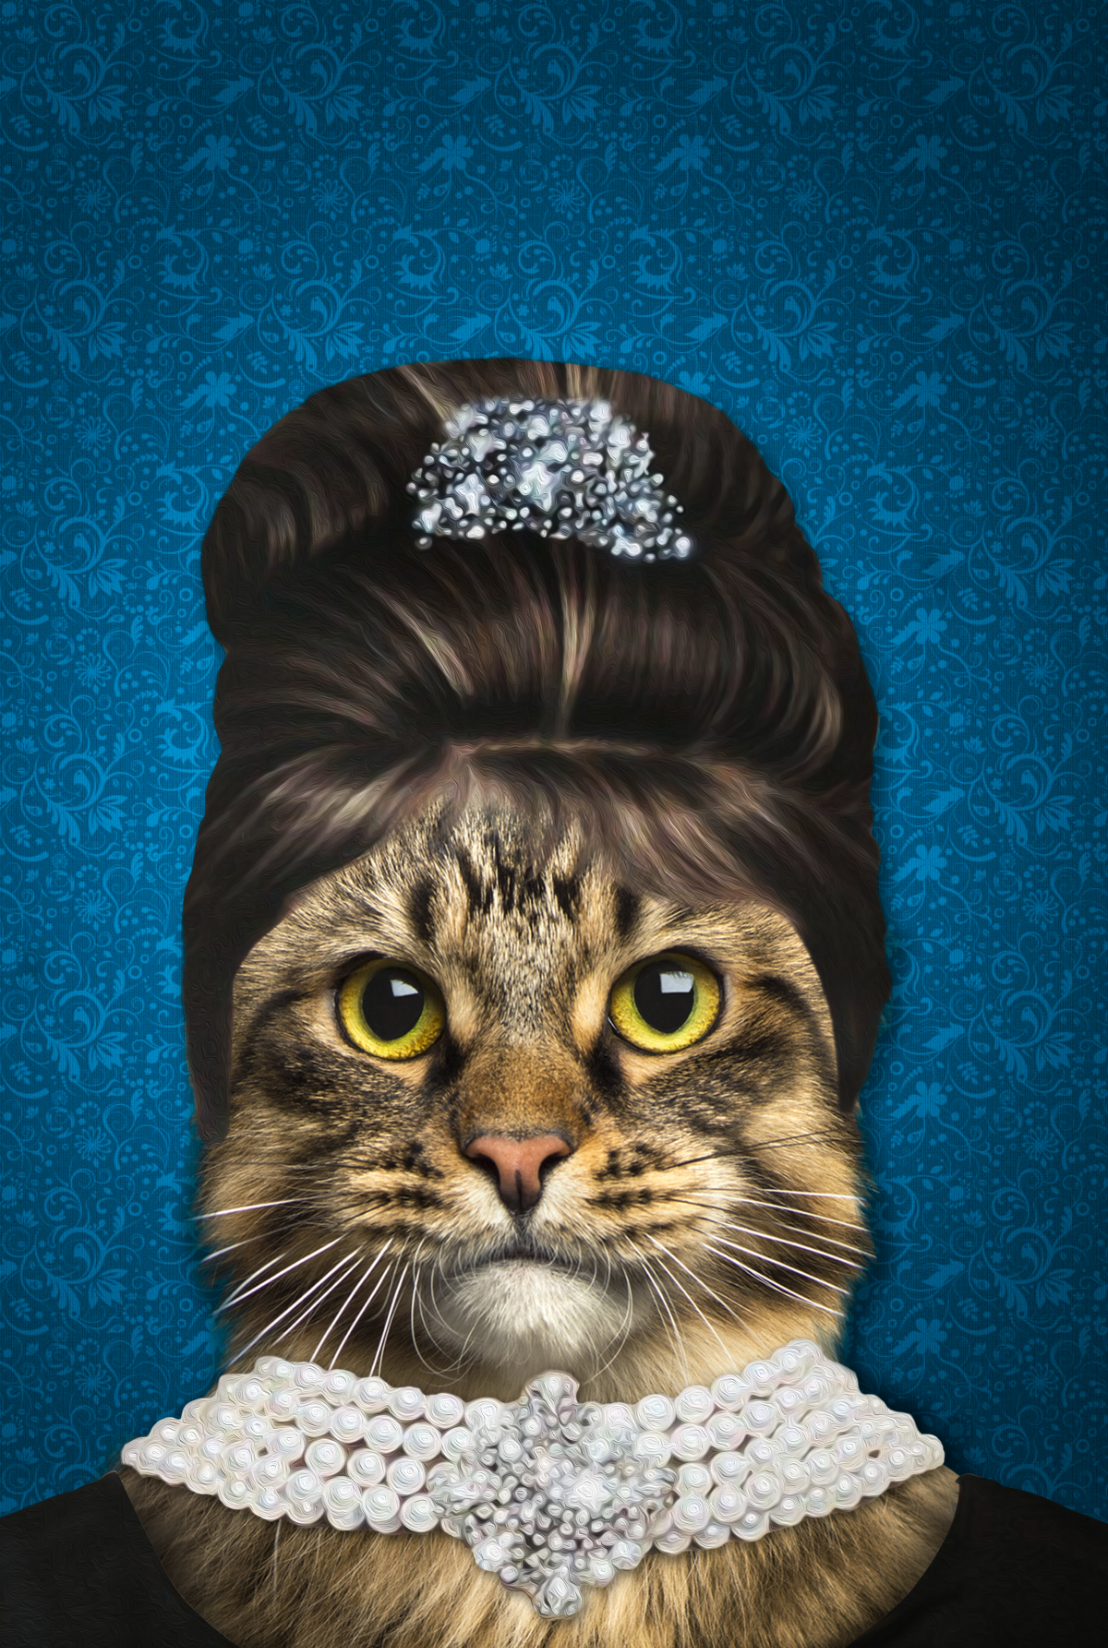 The Elegant Madam Custom Pet Portrait Canvas - Noble Pawtrait